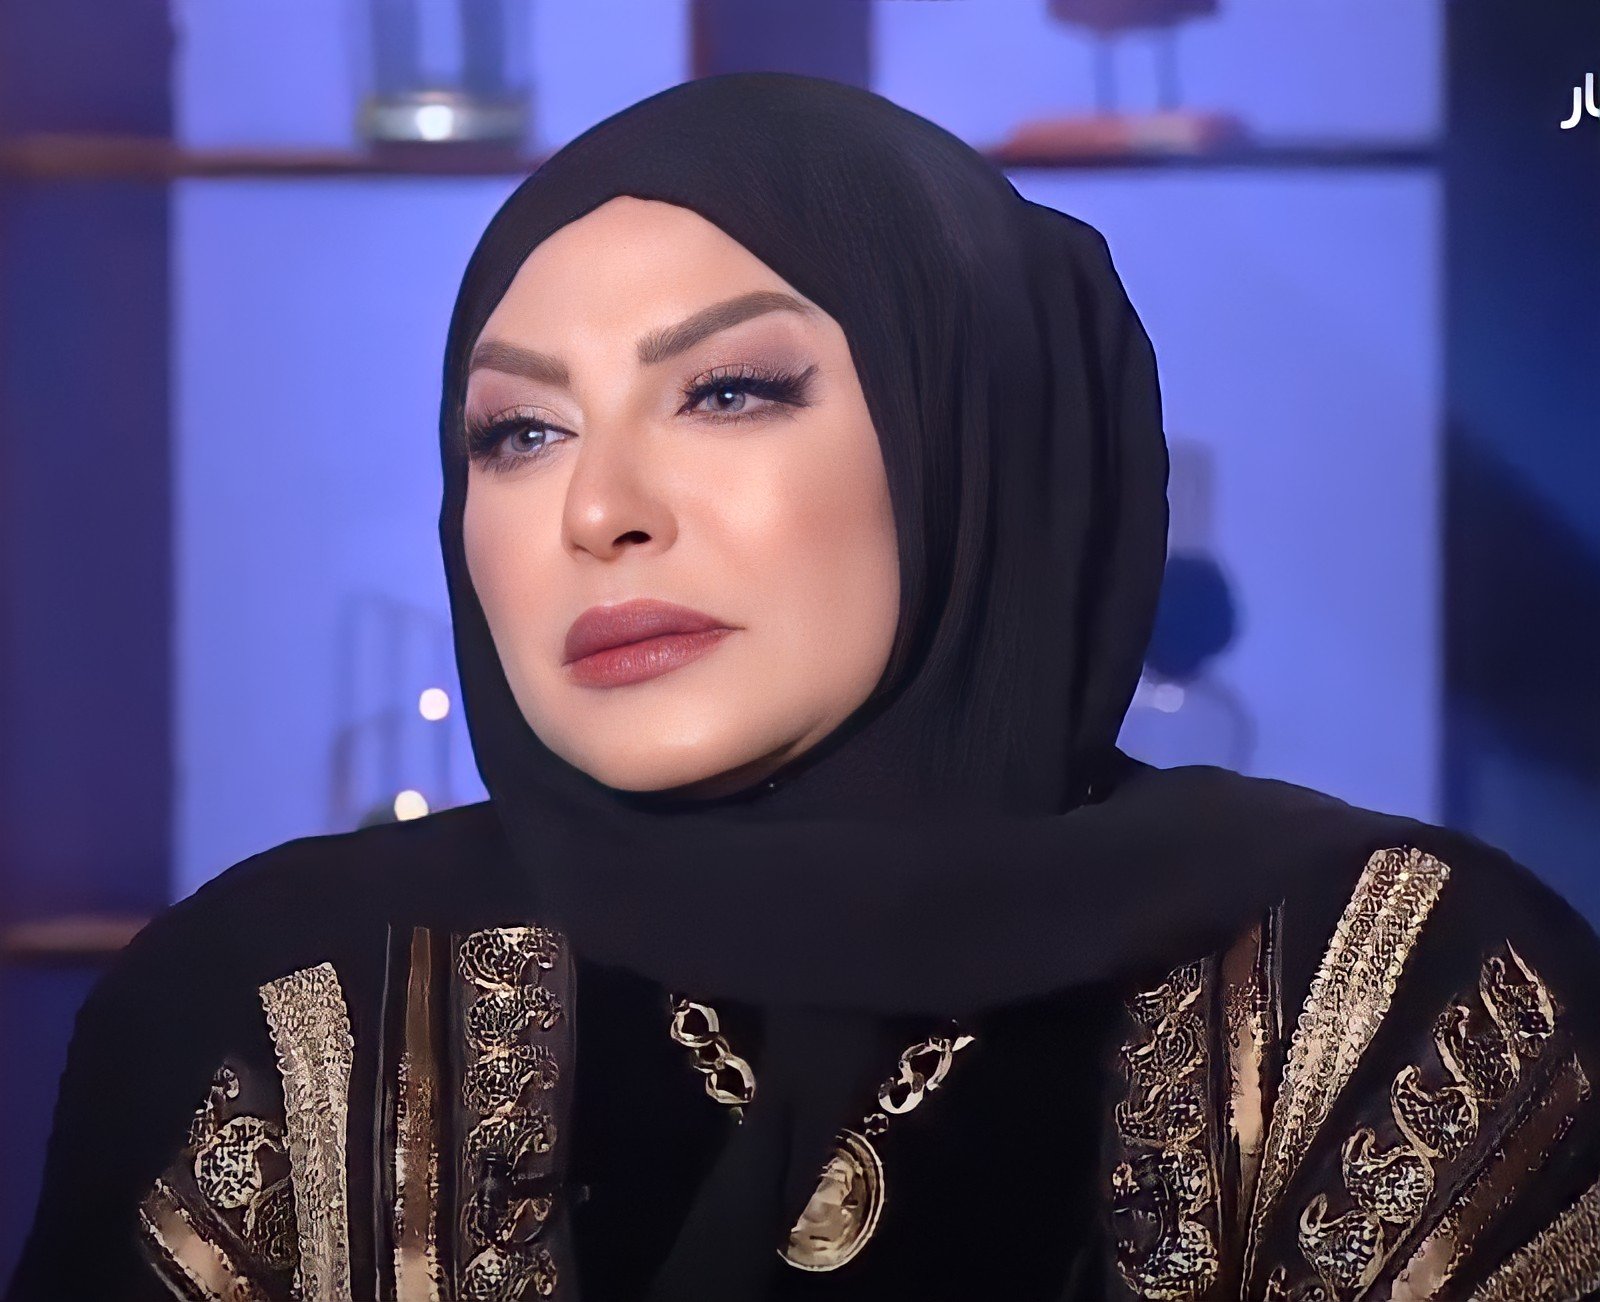 ميار الببلاوي توجه رسالة للفنانة شيرين عبد الوهاب "كلنا تطلقنا اسأليني أنا" (فيديو)